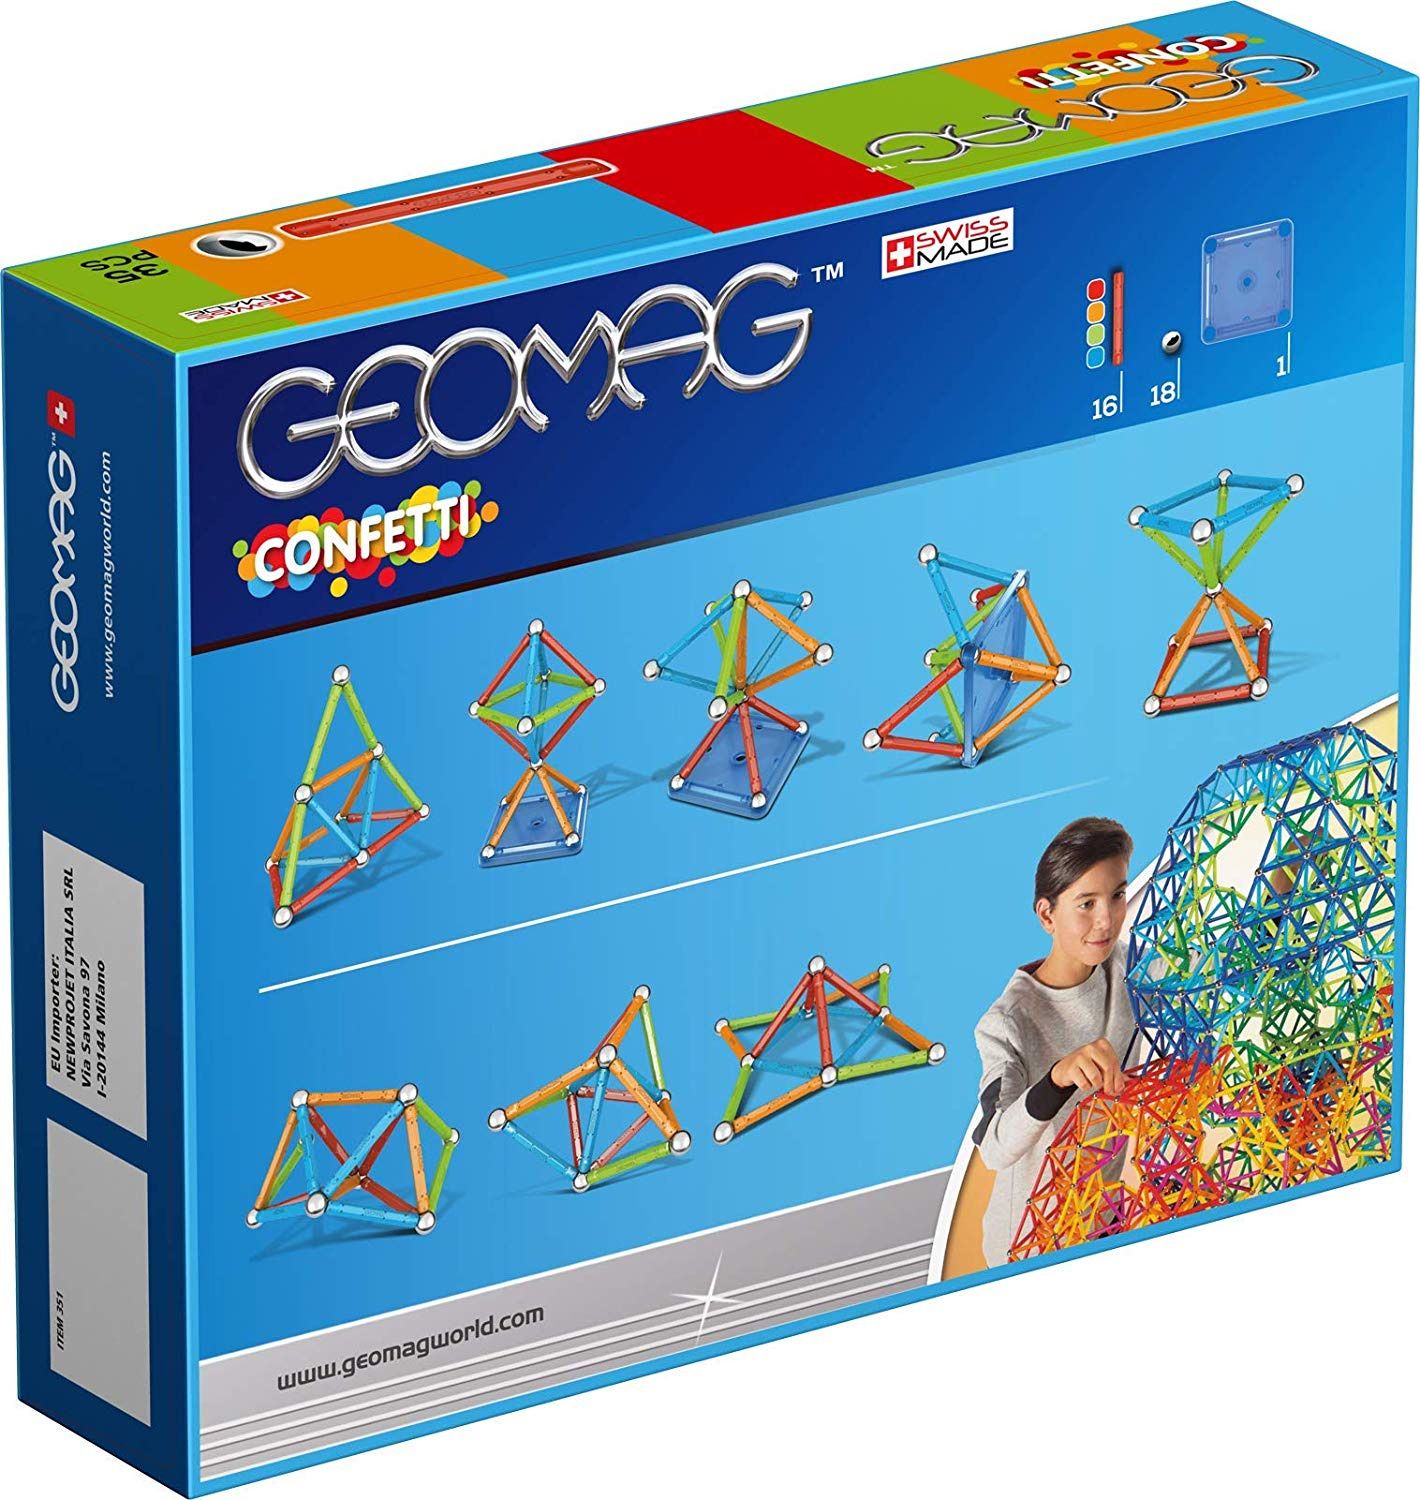   Geomag Confetti, 351